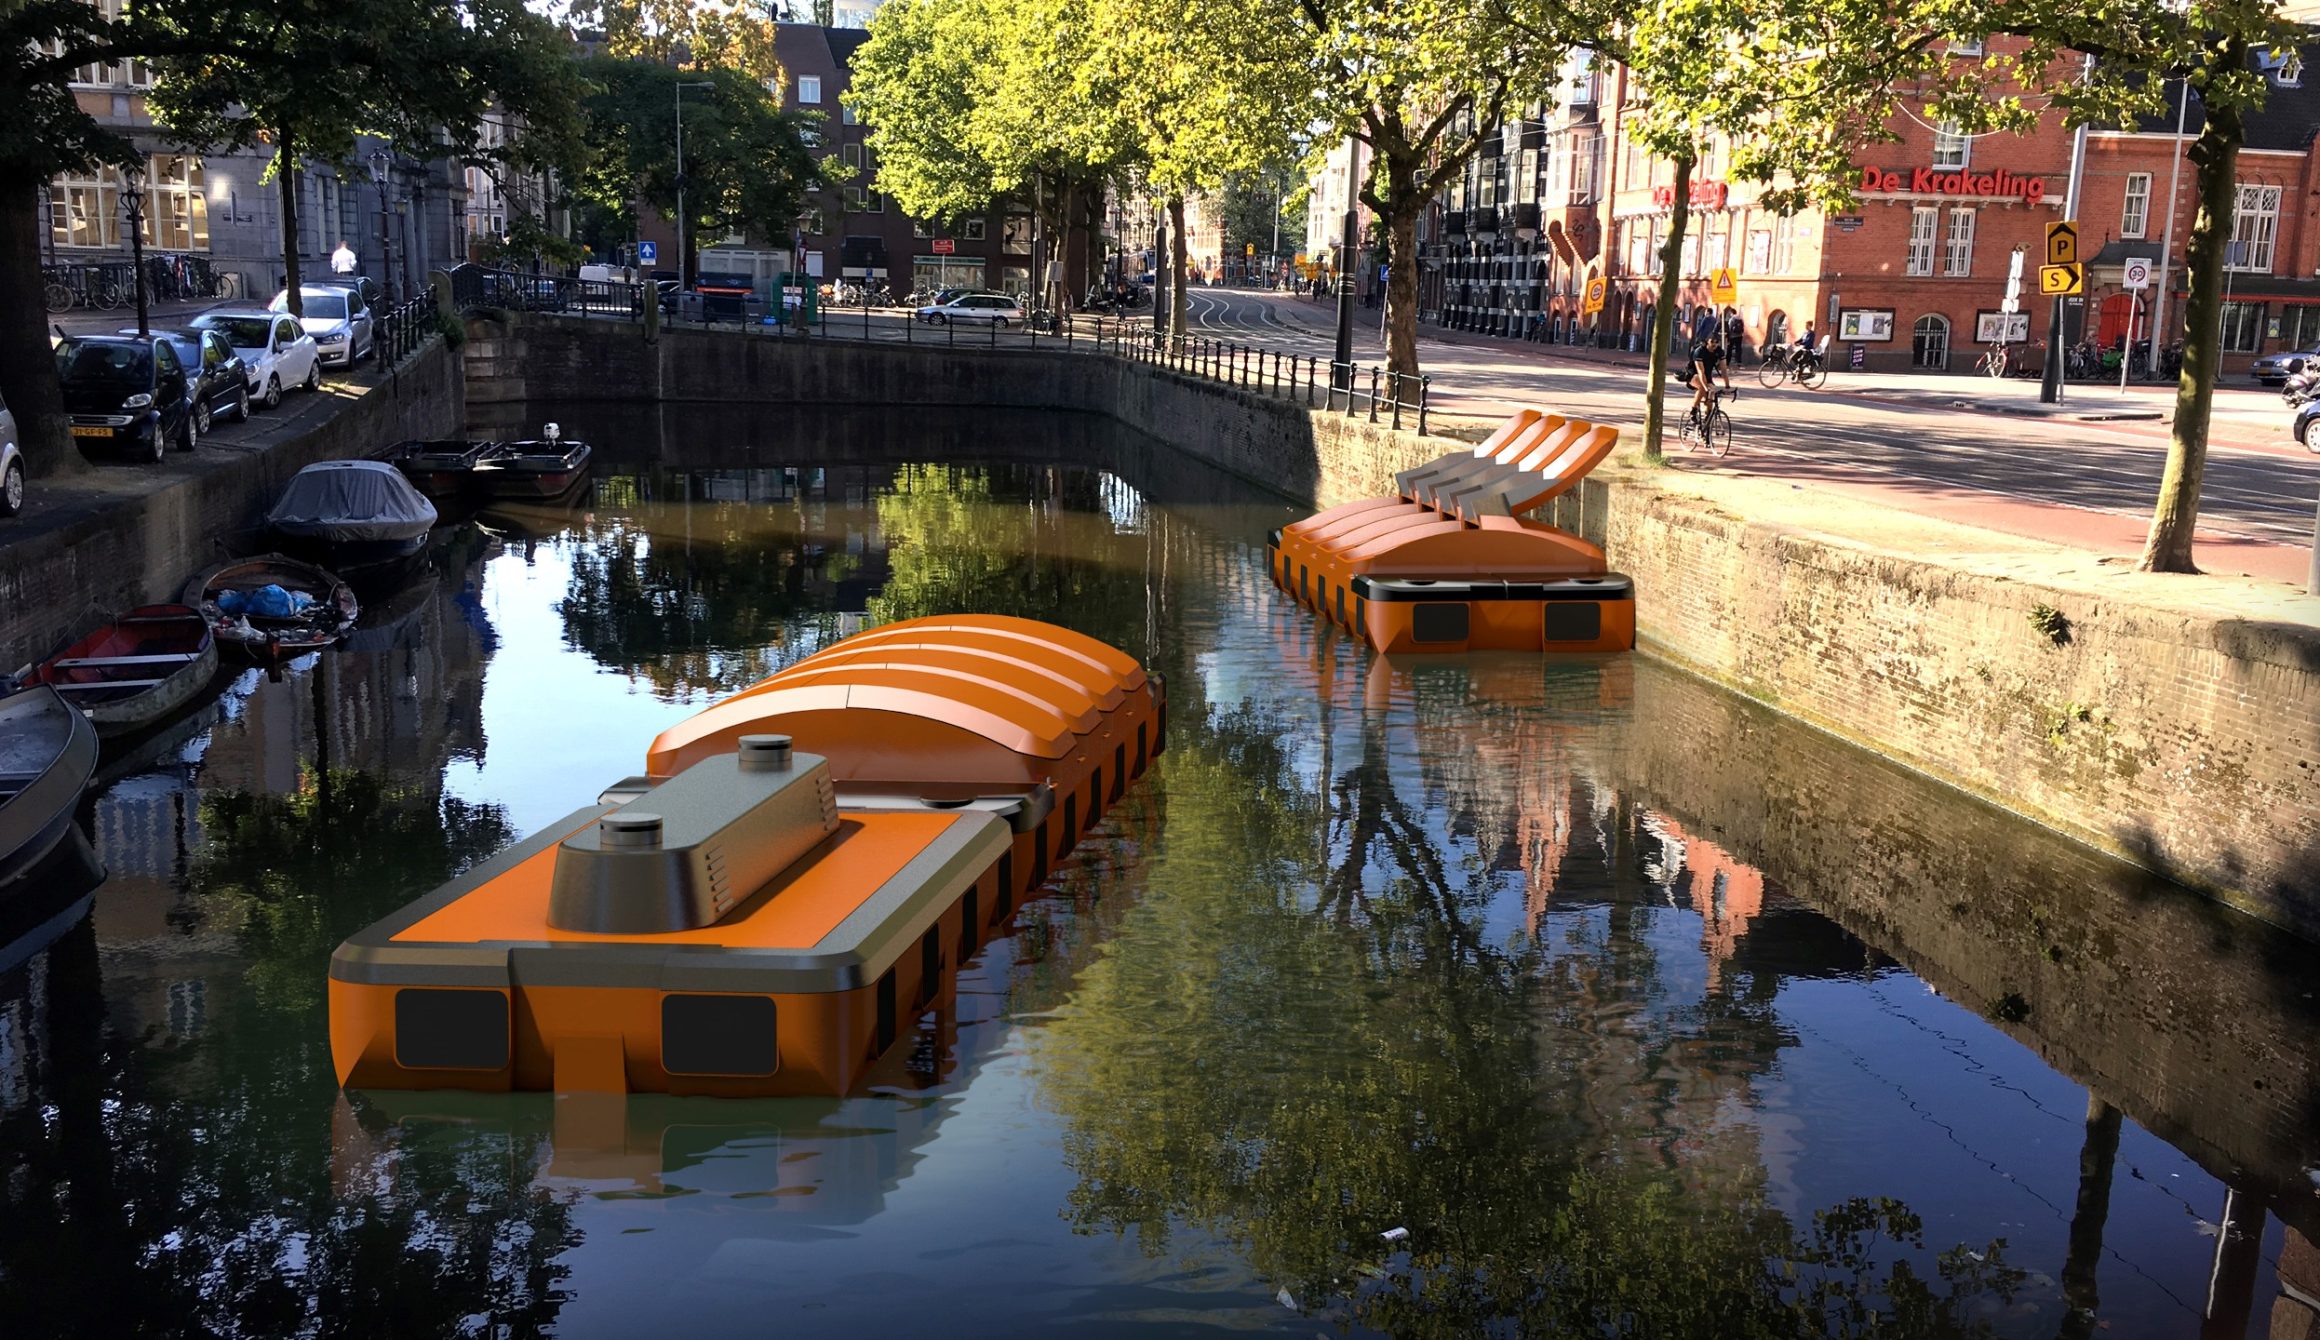 Haalt Amsterdam straks vuilnis op met zelfvarende e-bootjes?